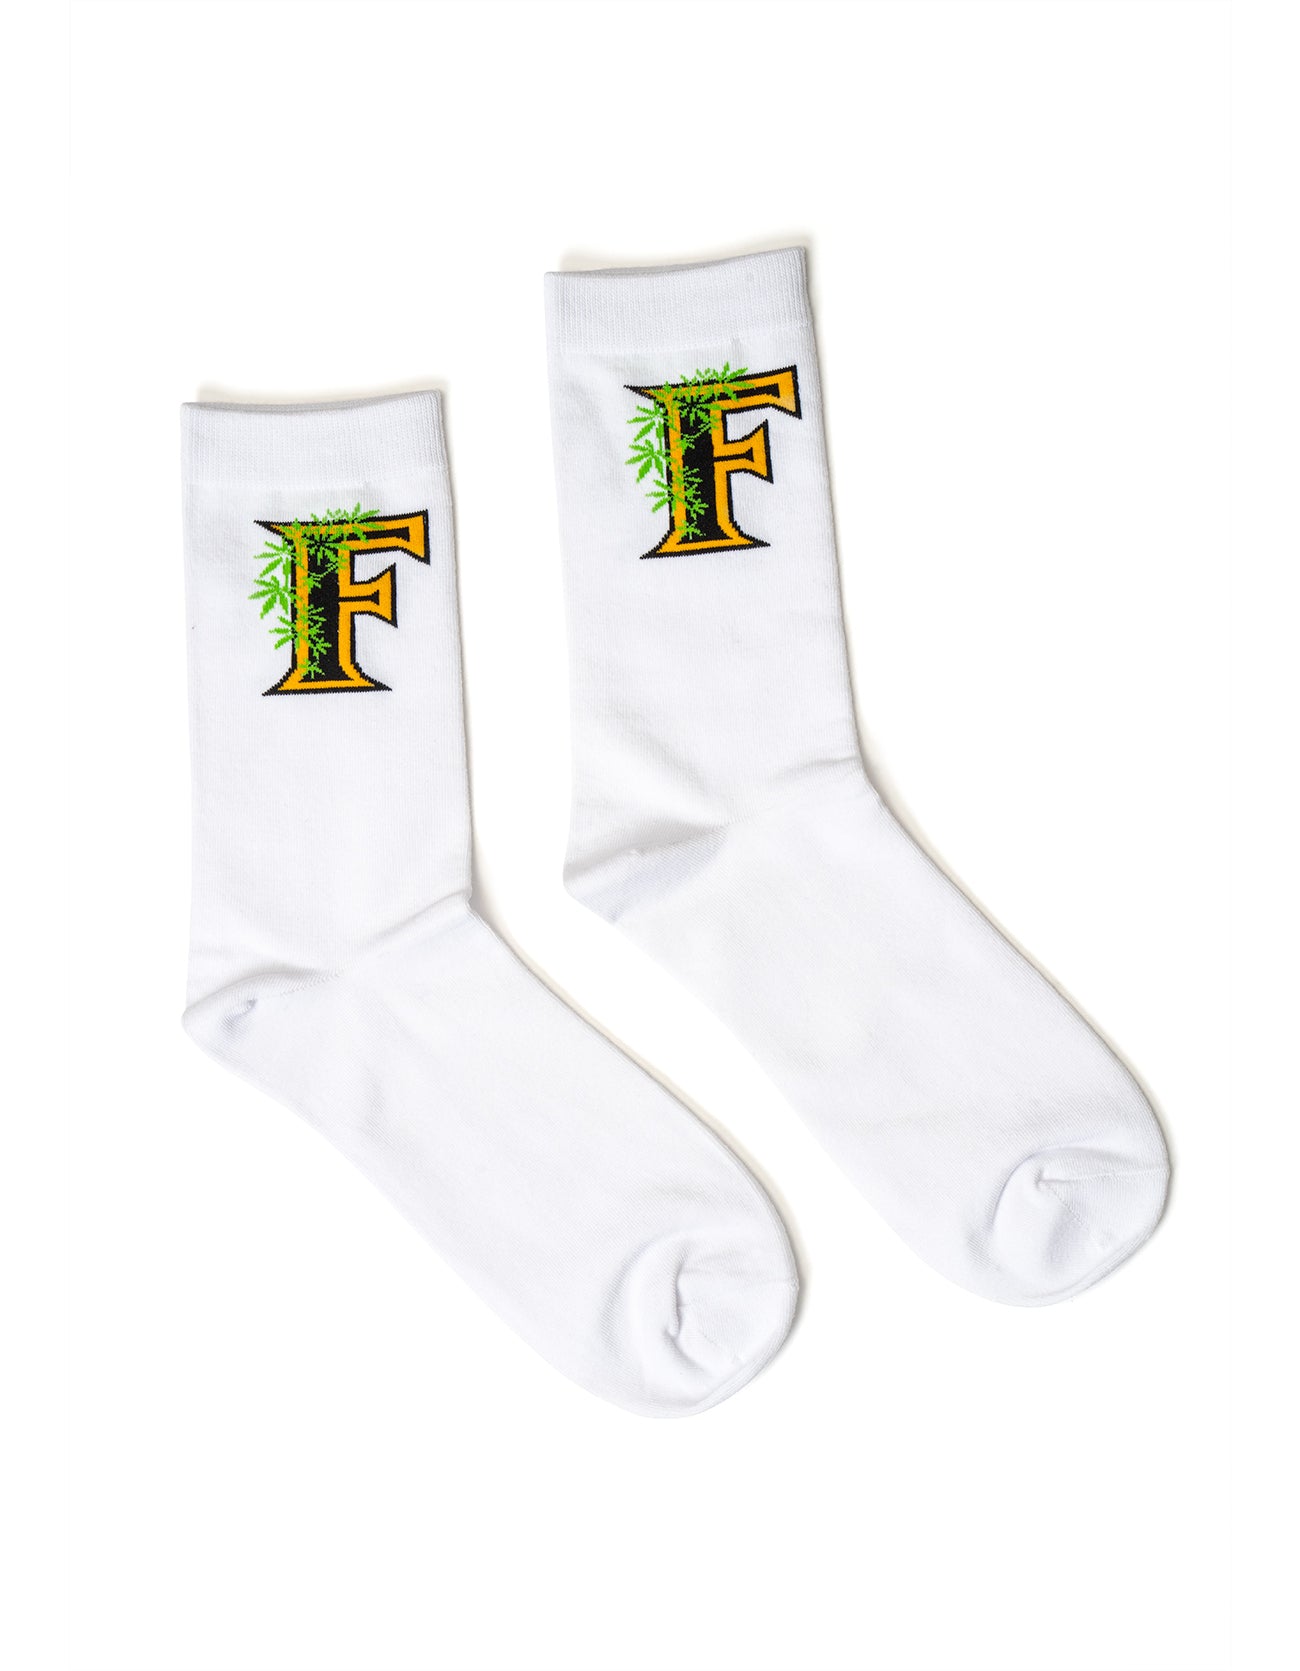 Flee Farms White Socks